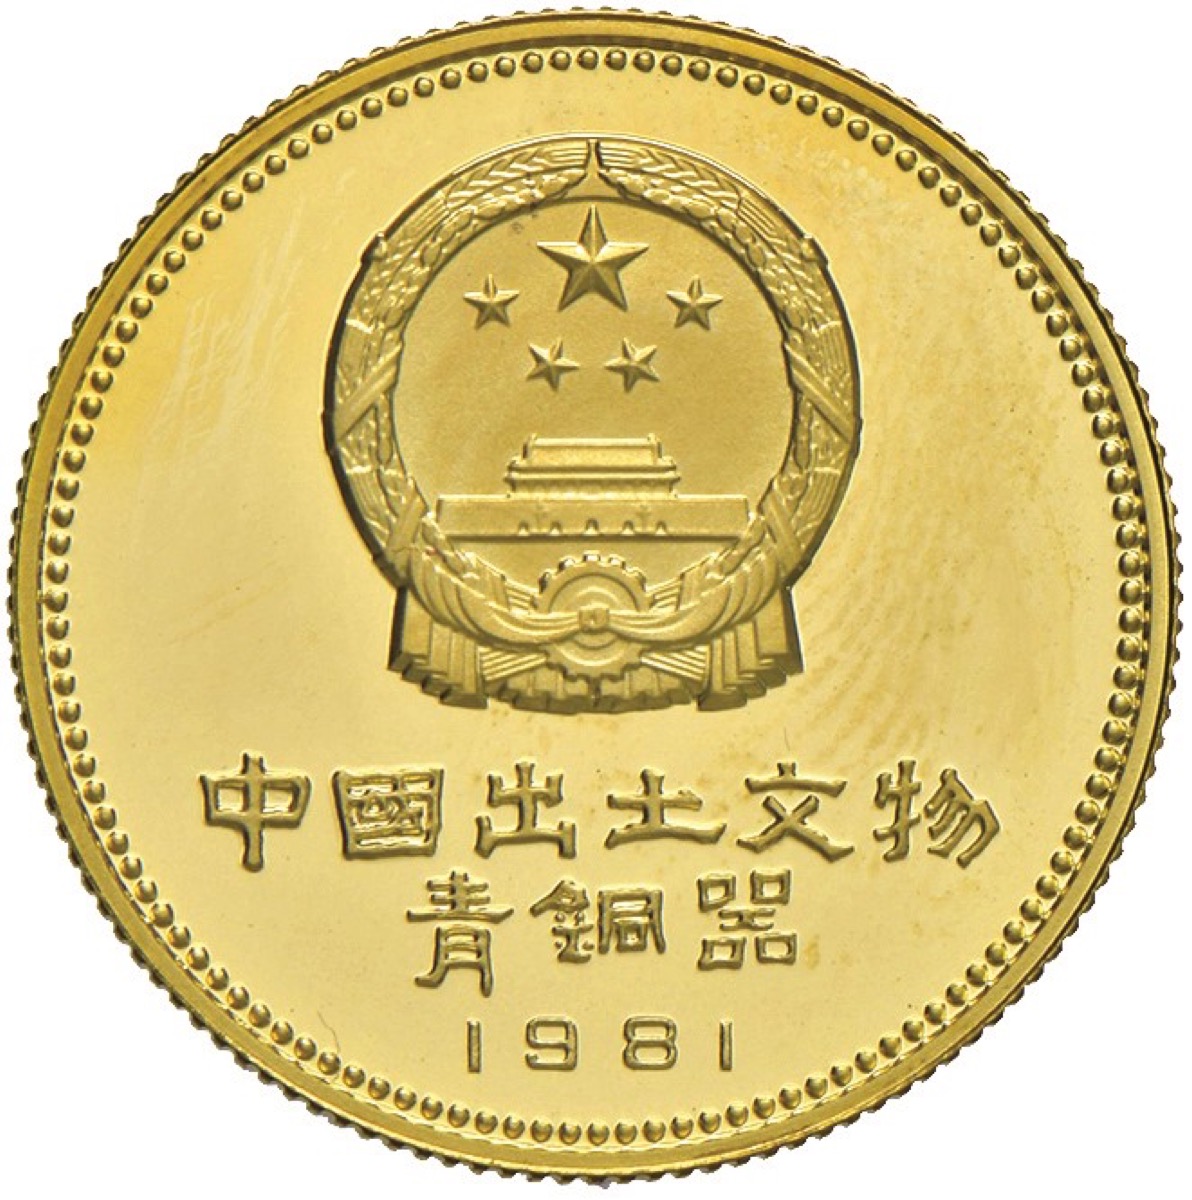 CINA. Repubblica Popolare - 200 yuan 1981. Friedb. 11. ORO, gr. 8,47. FDC -